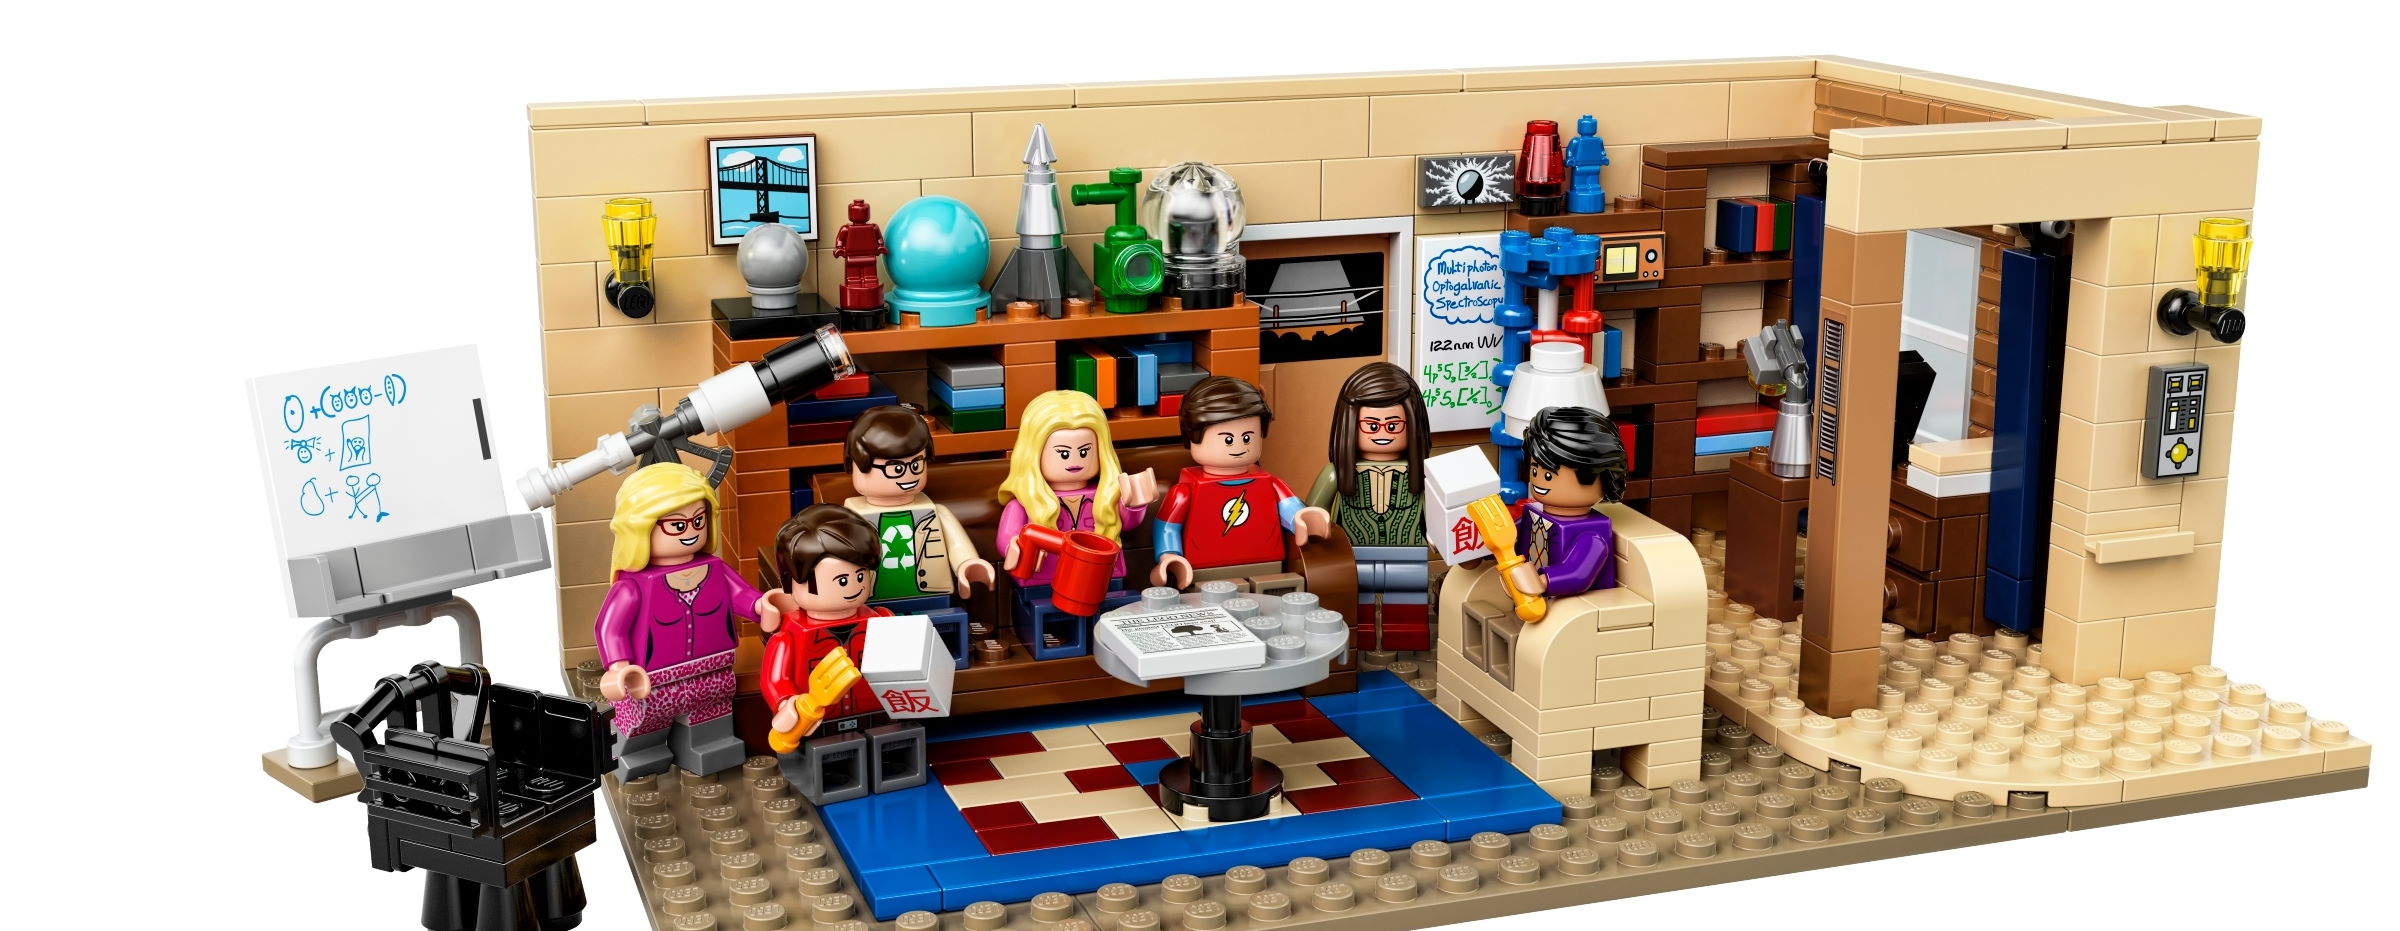 Das Big Bang Theory Set als Lego